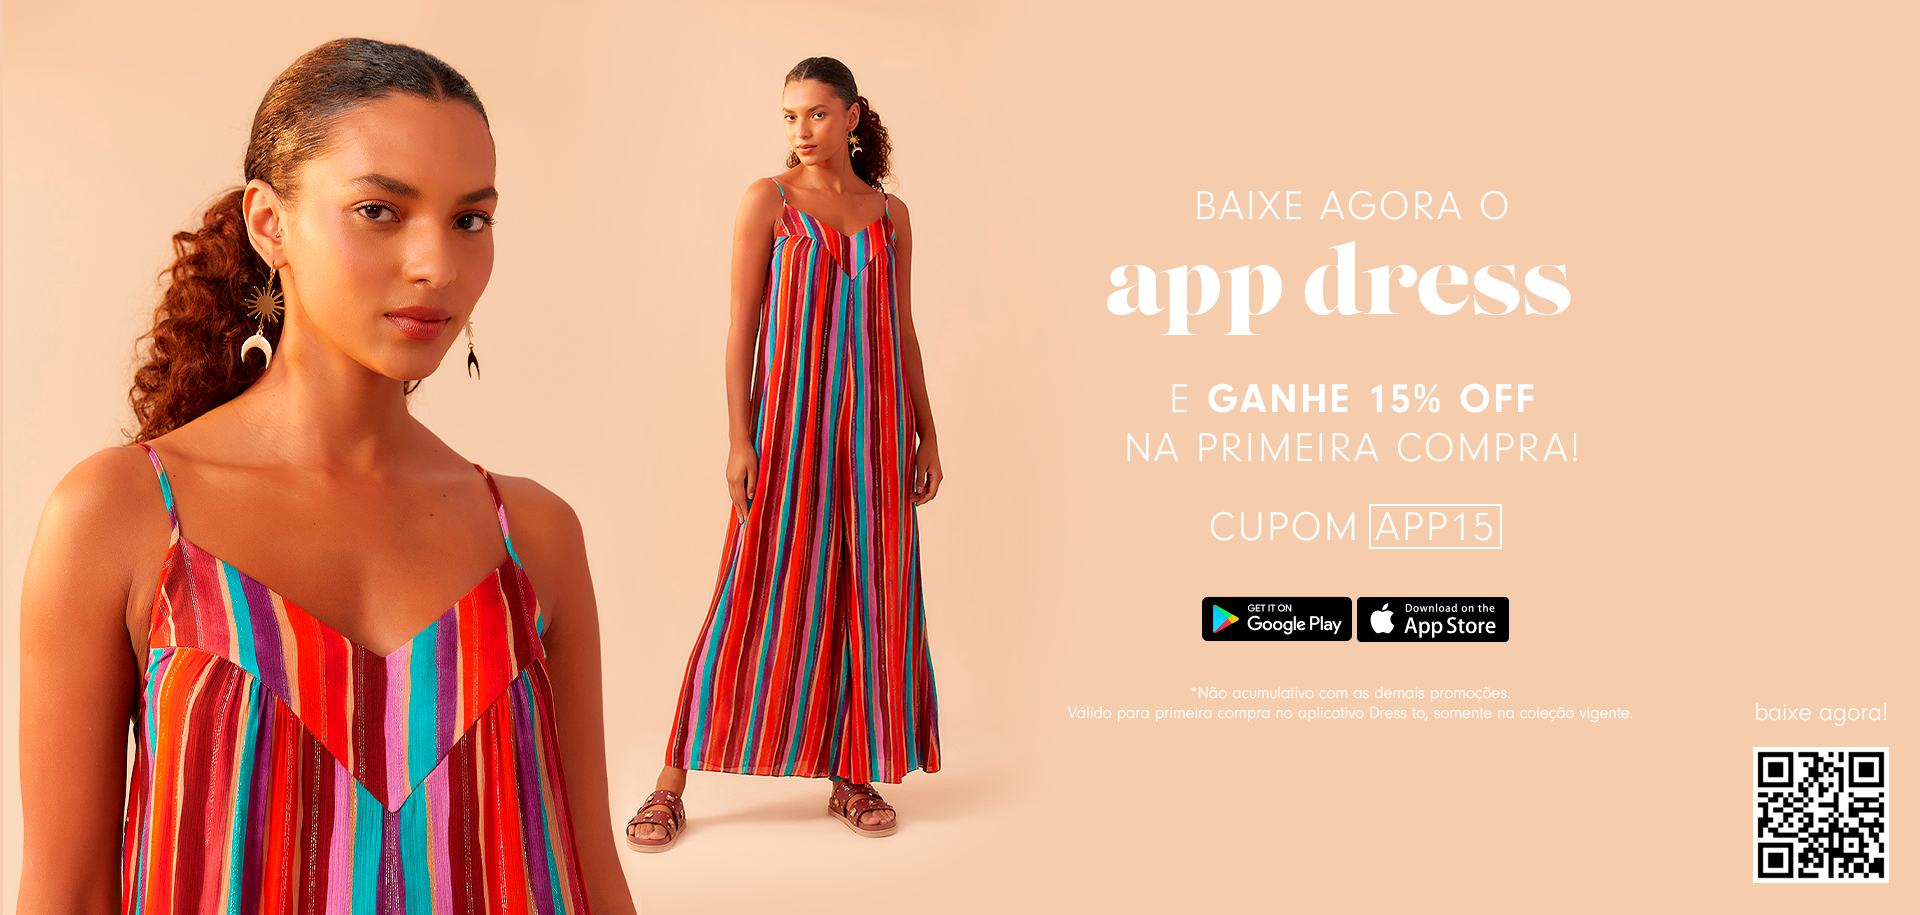 Modelo veste veste colorido da coleção Liberdade, banner baixe o app Dress e Ganhe 15% OFF na primeira compra.